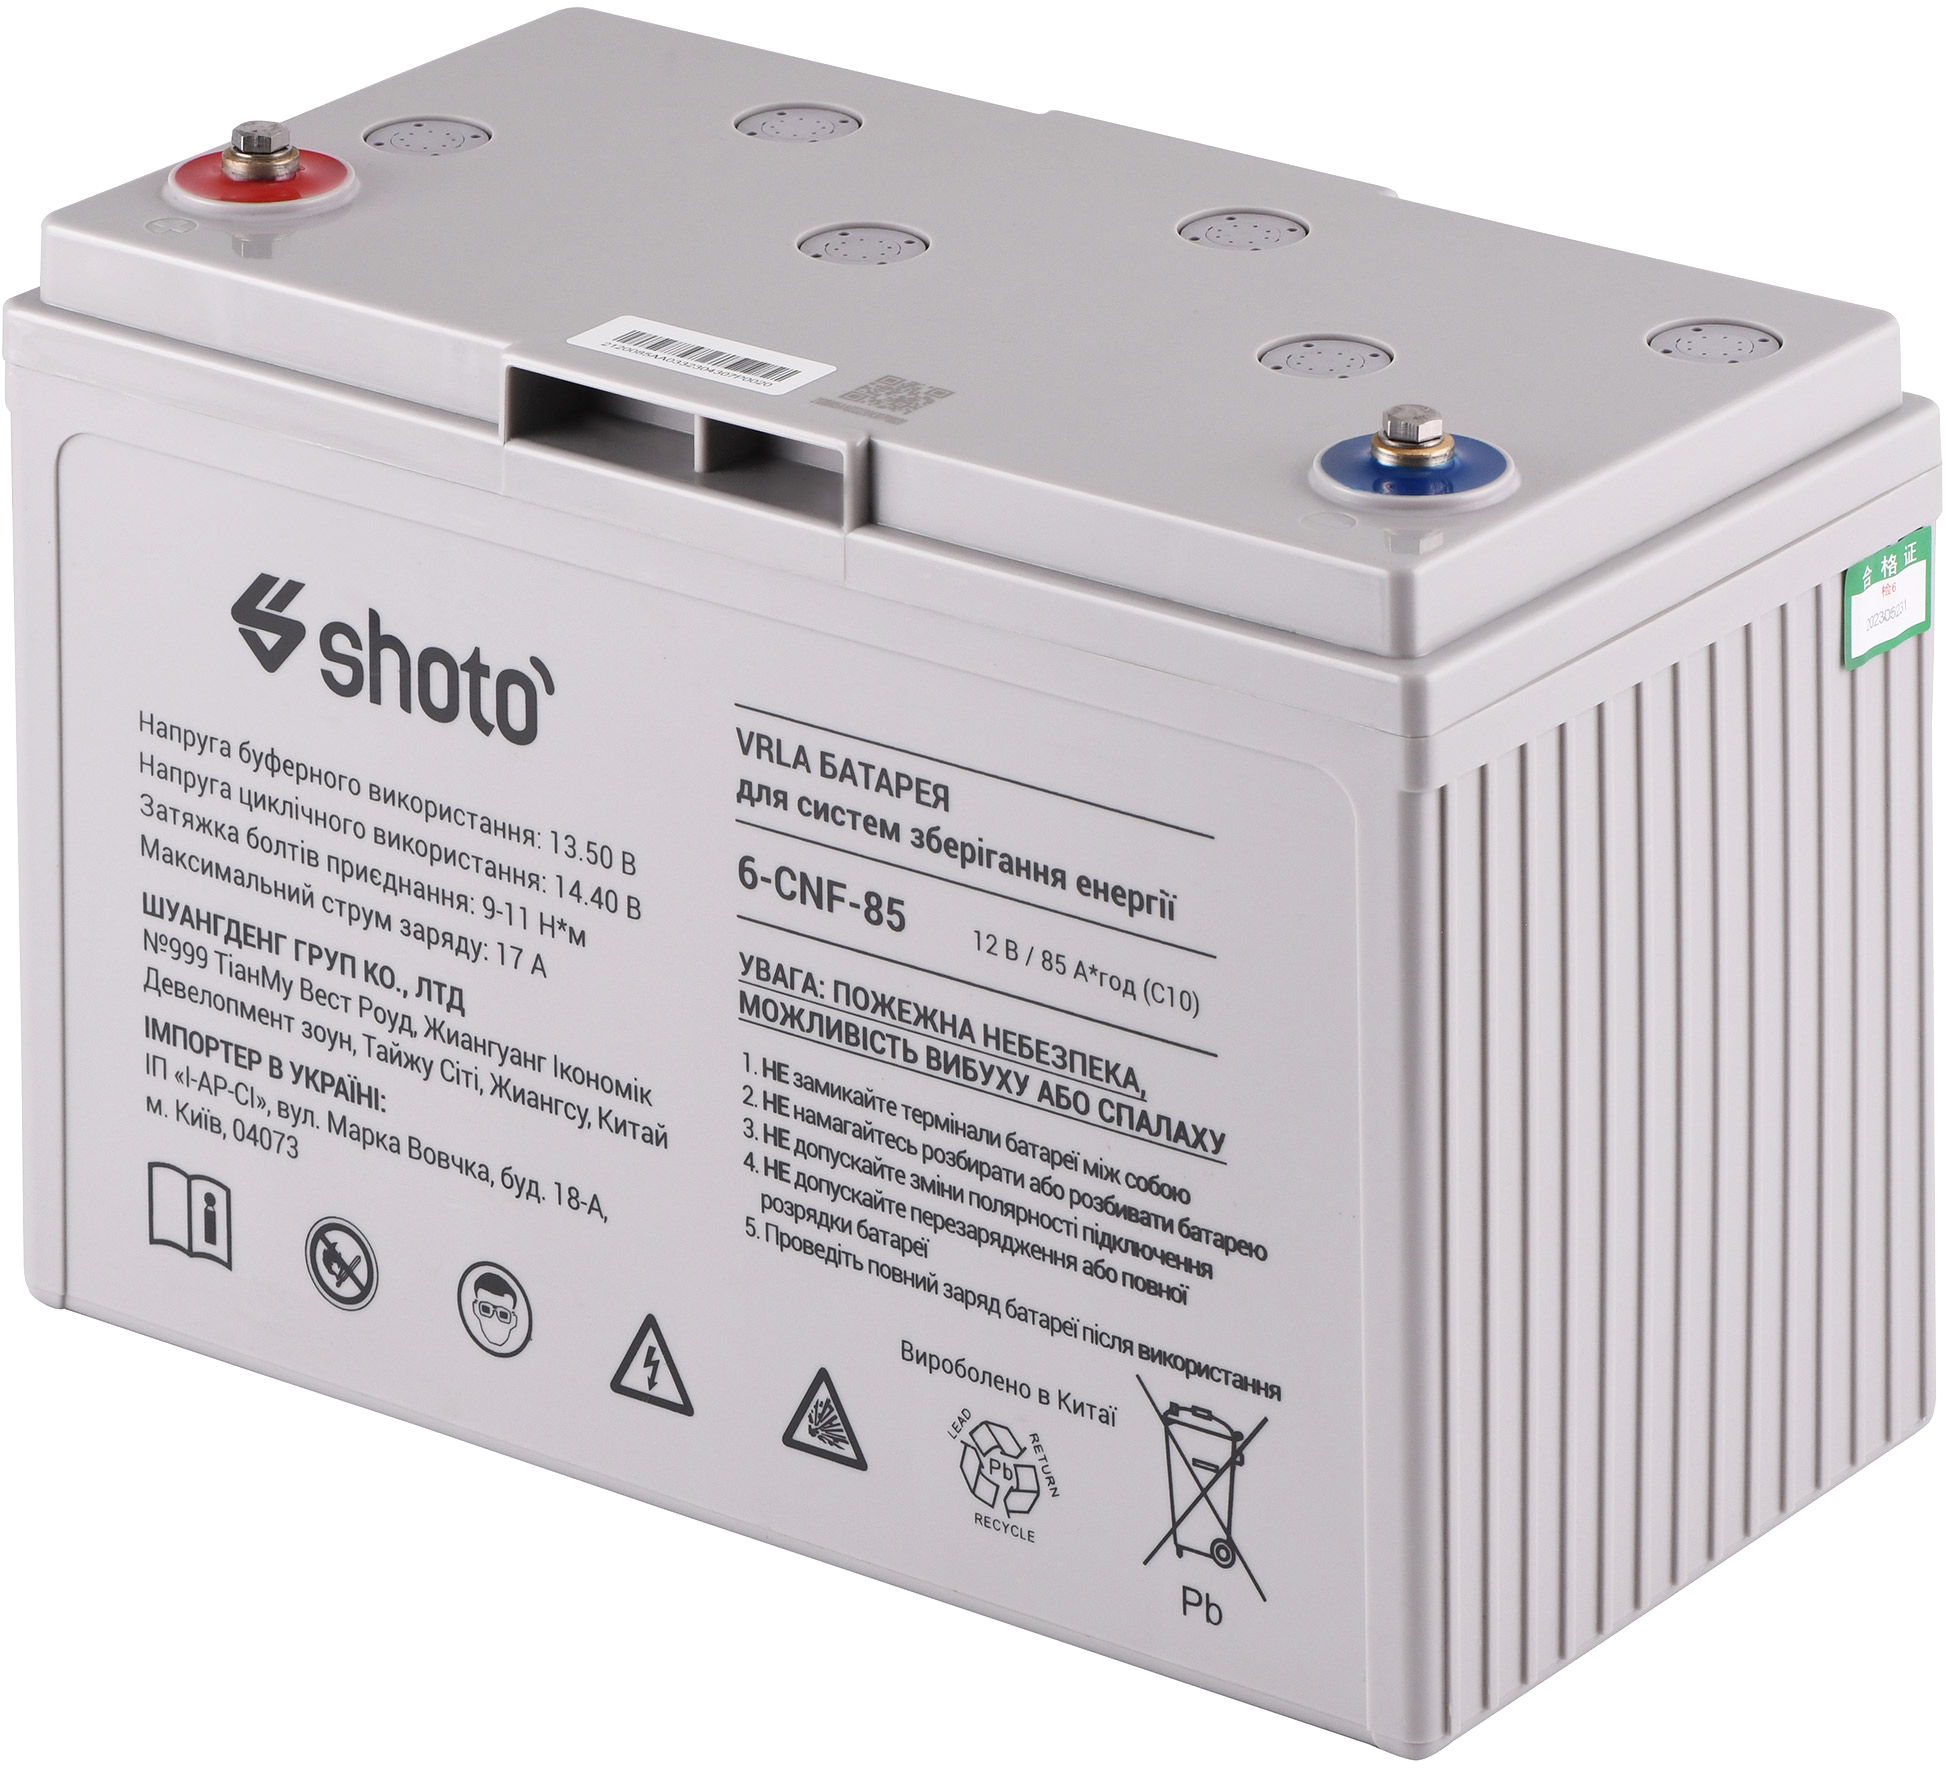 Отзывы аккумулятор shoto для ибп Shoto 6CNF, 12V, 85Ah, GEL-CARBON в Украине